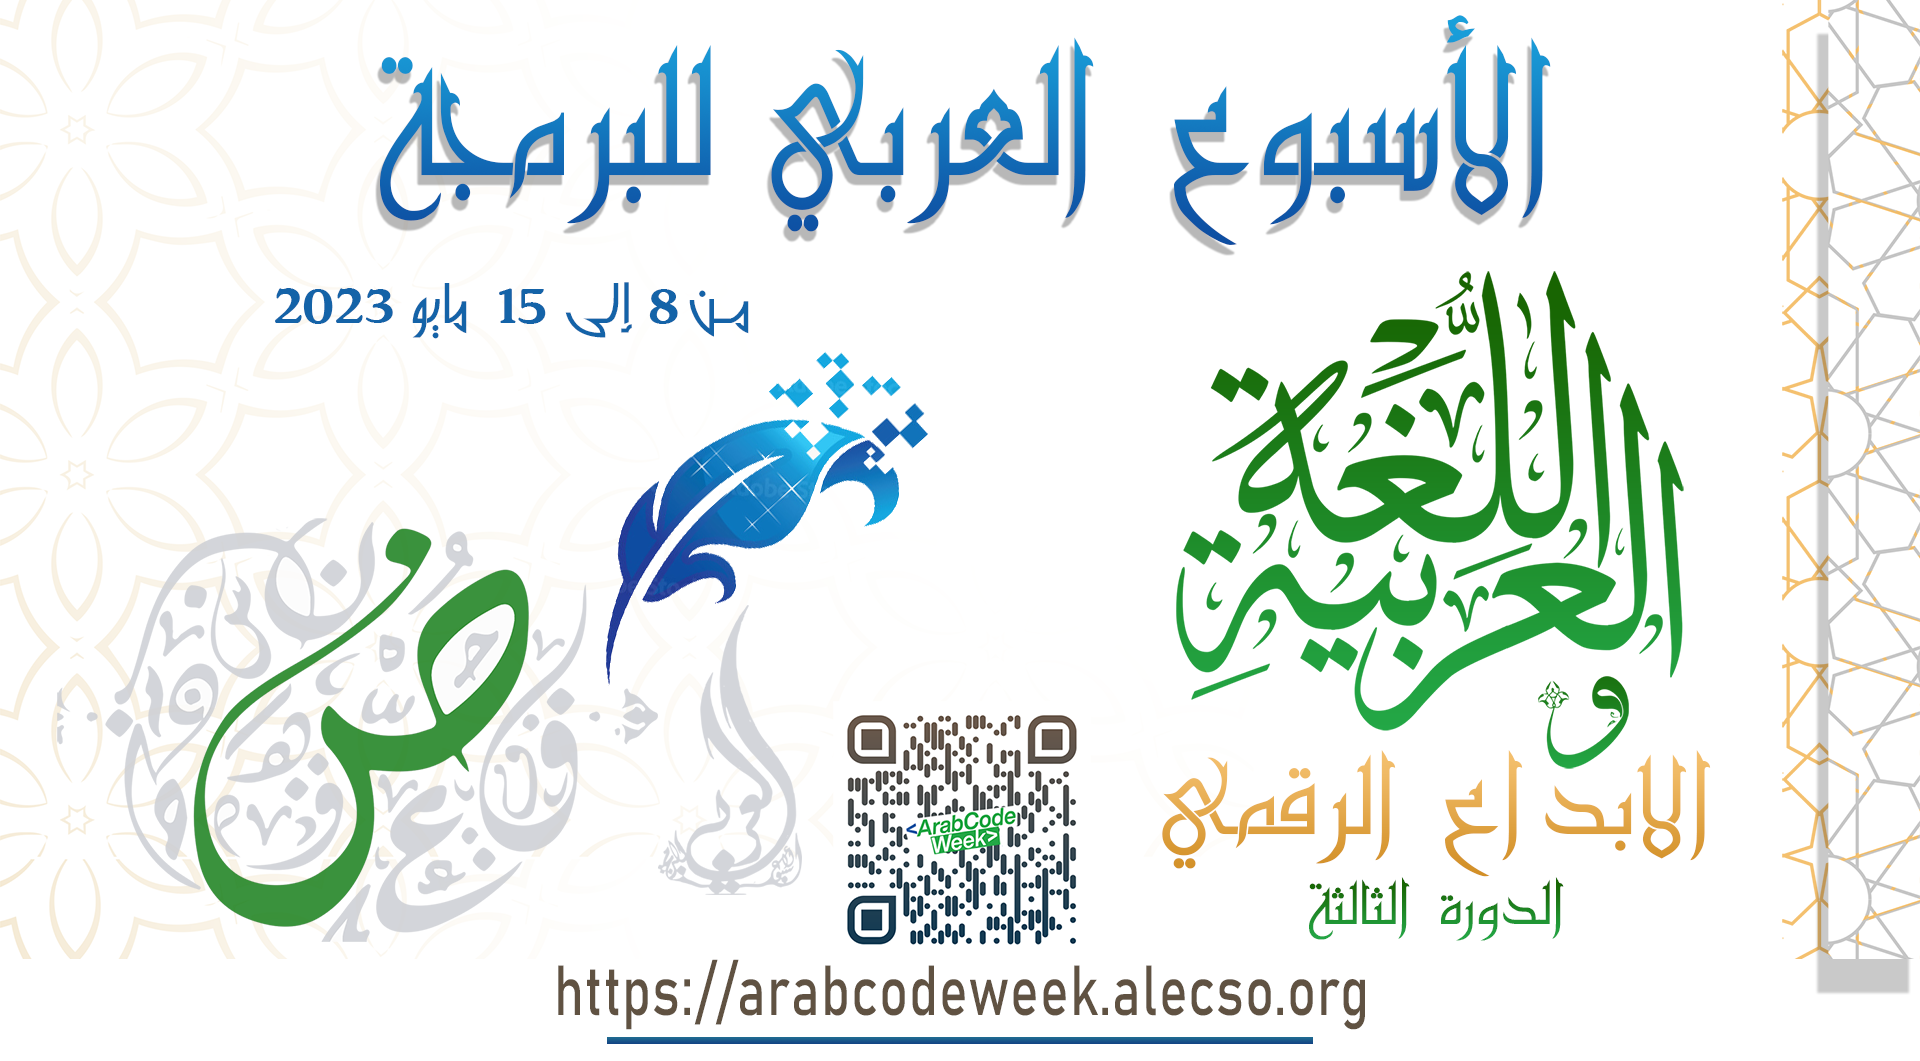 الأسبوع العربي للبرمجة